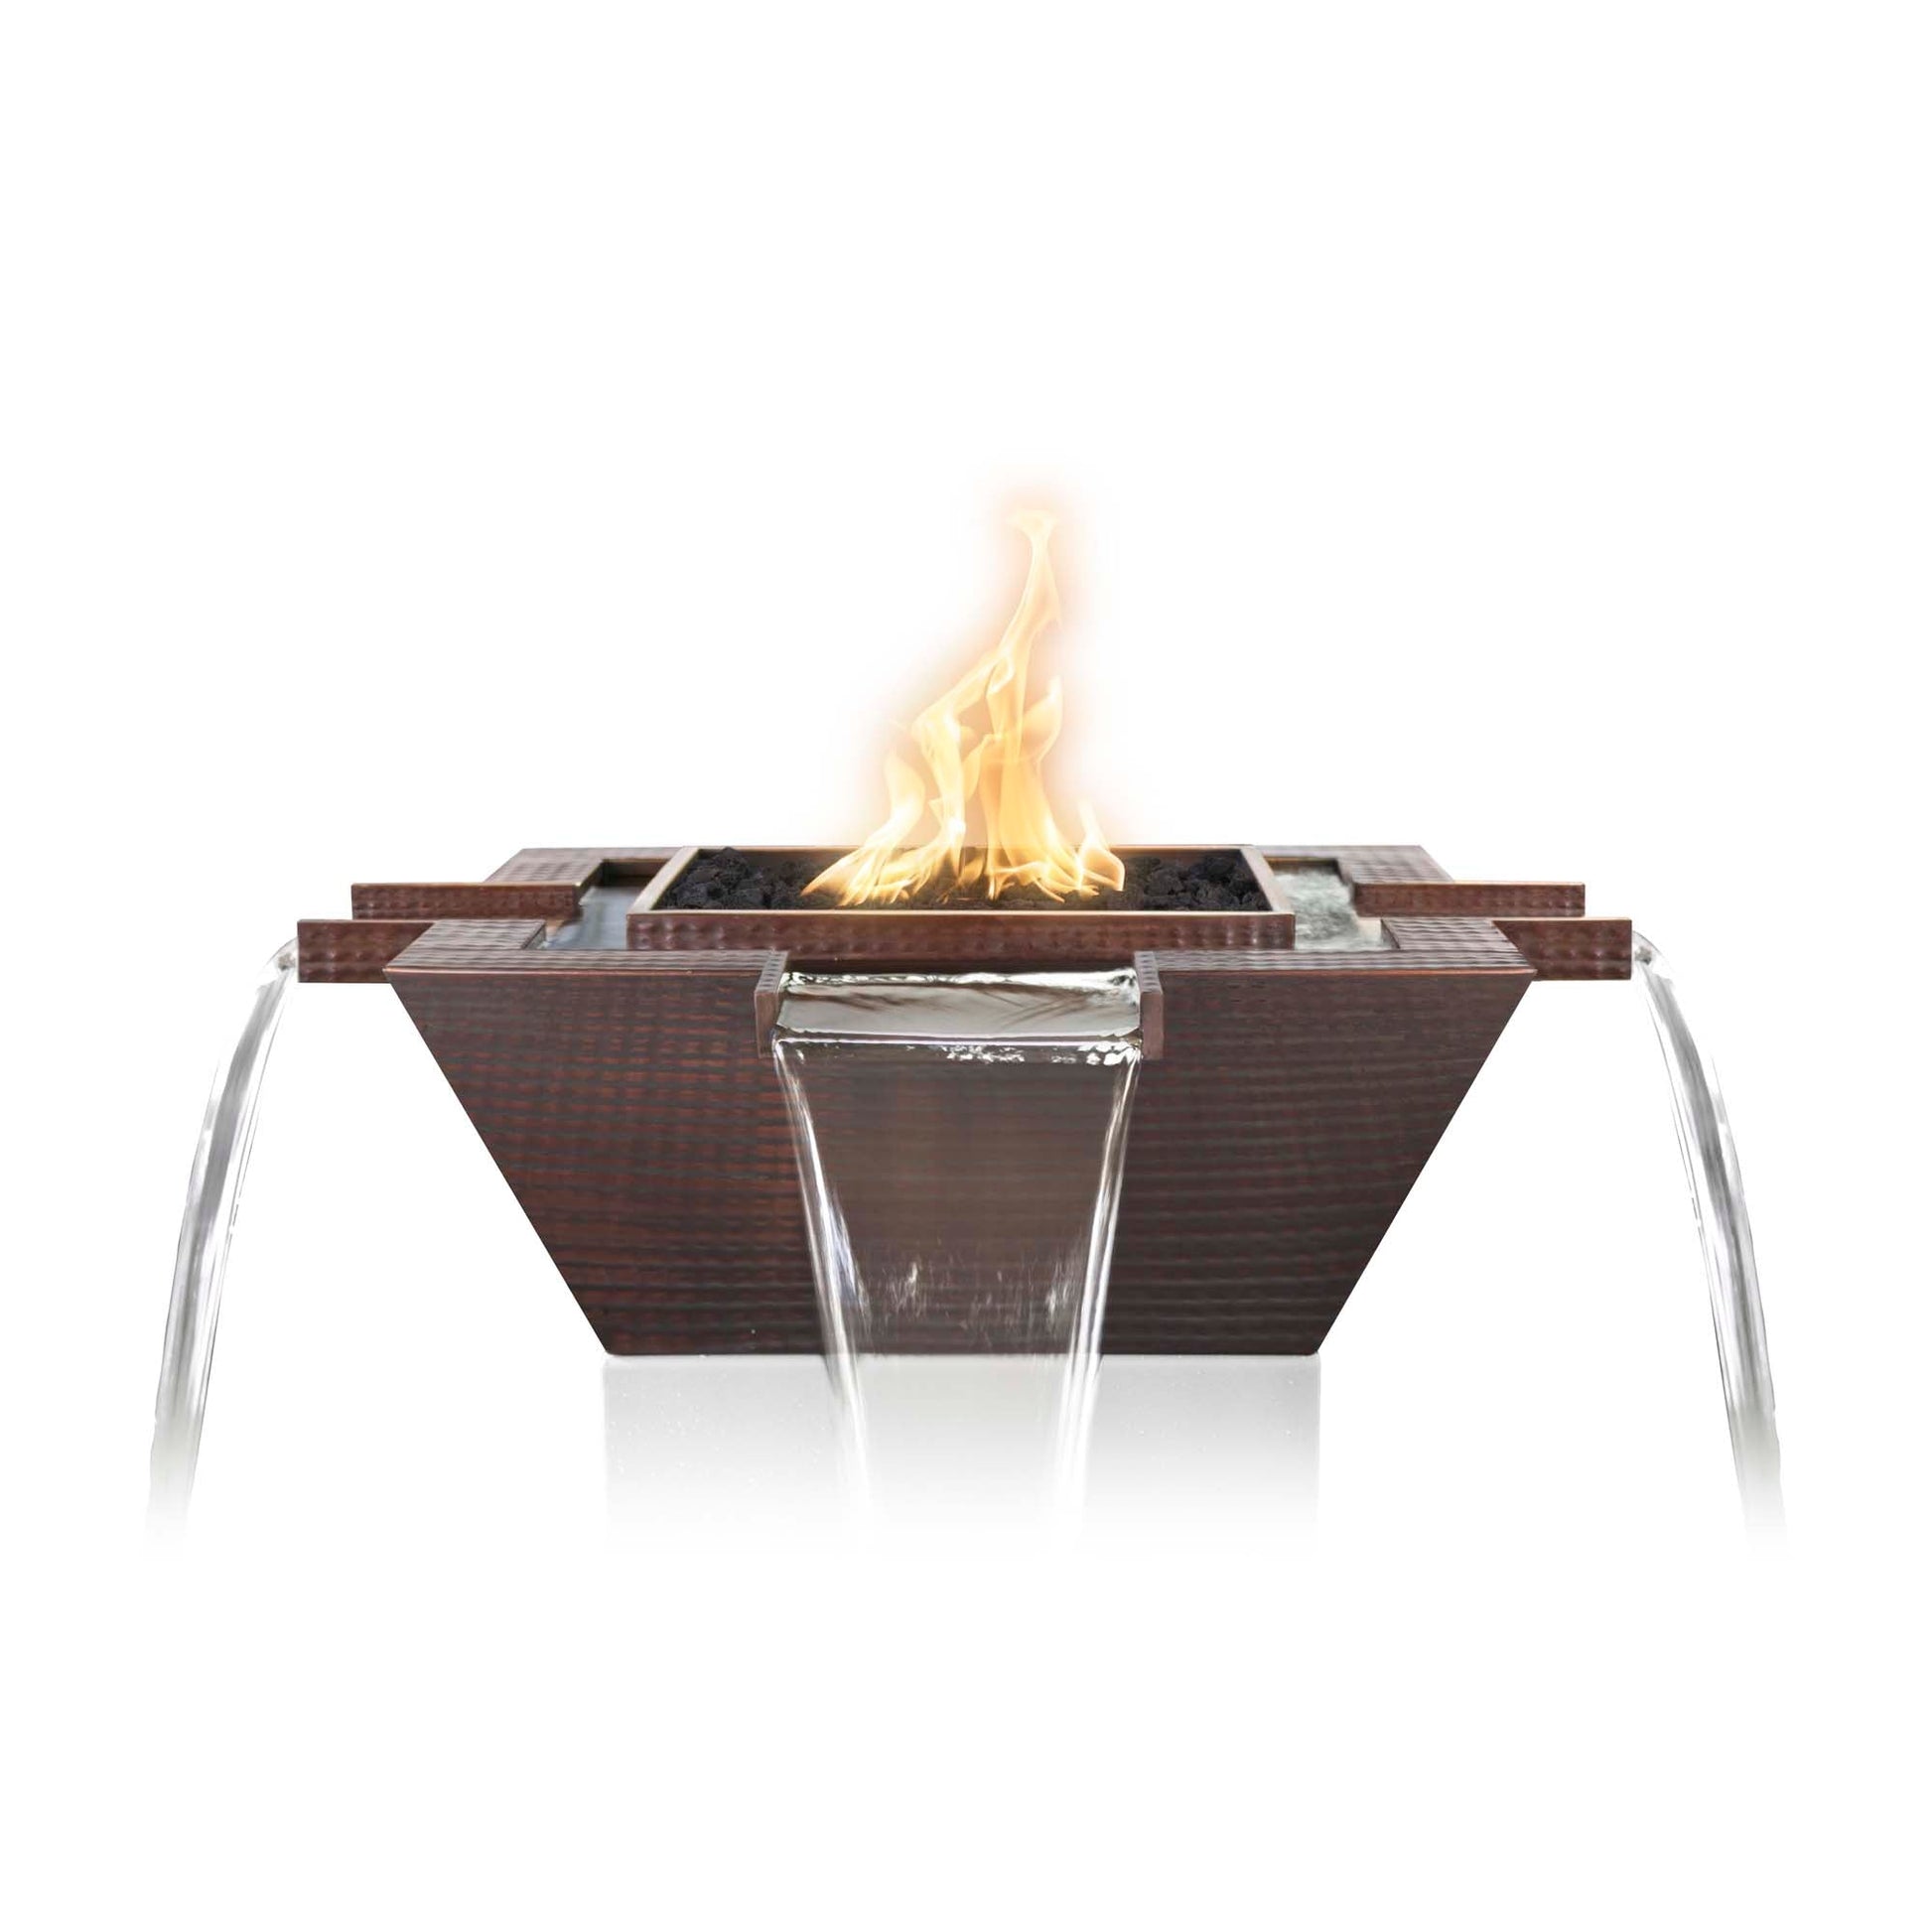 36" Maya Hammered Copper Fire & Water Bowl - 4-Way Spill - Match Lit-Novel Home